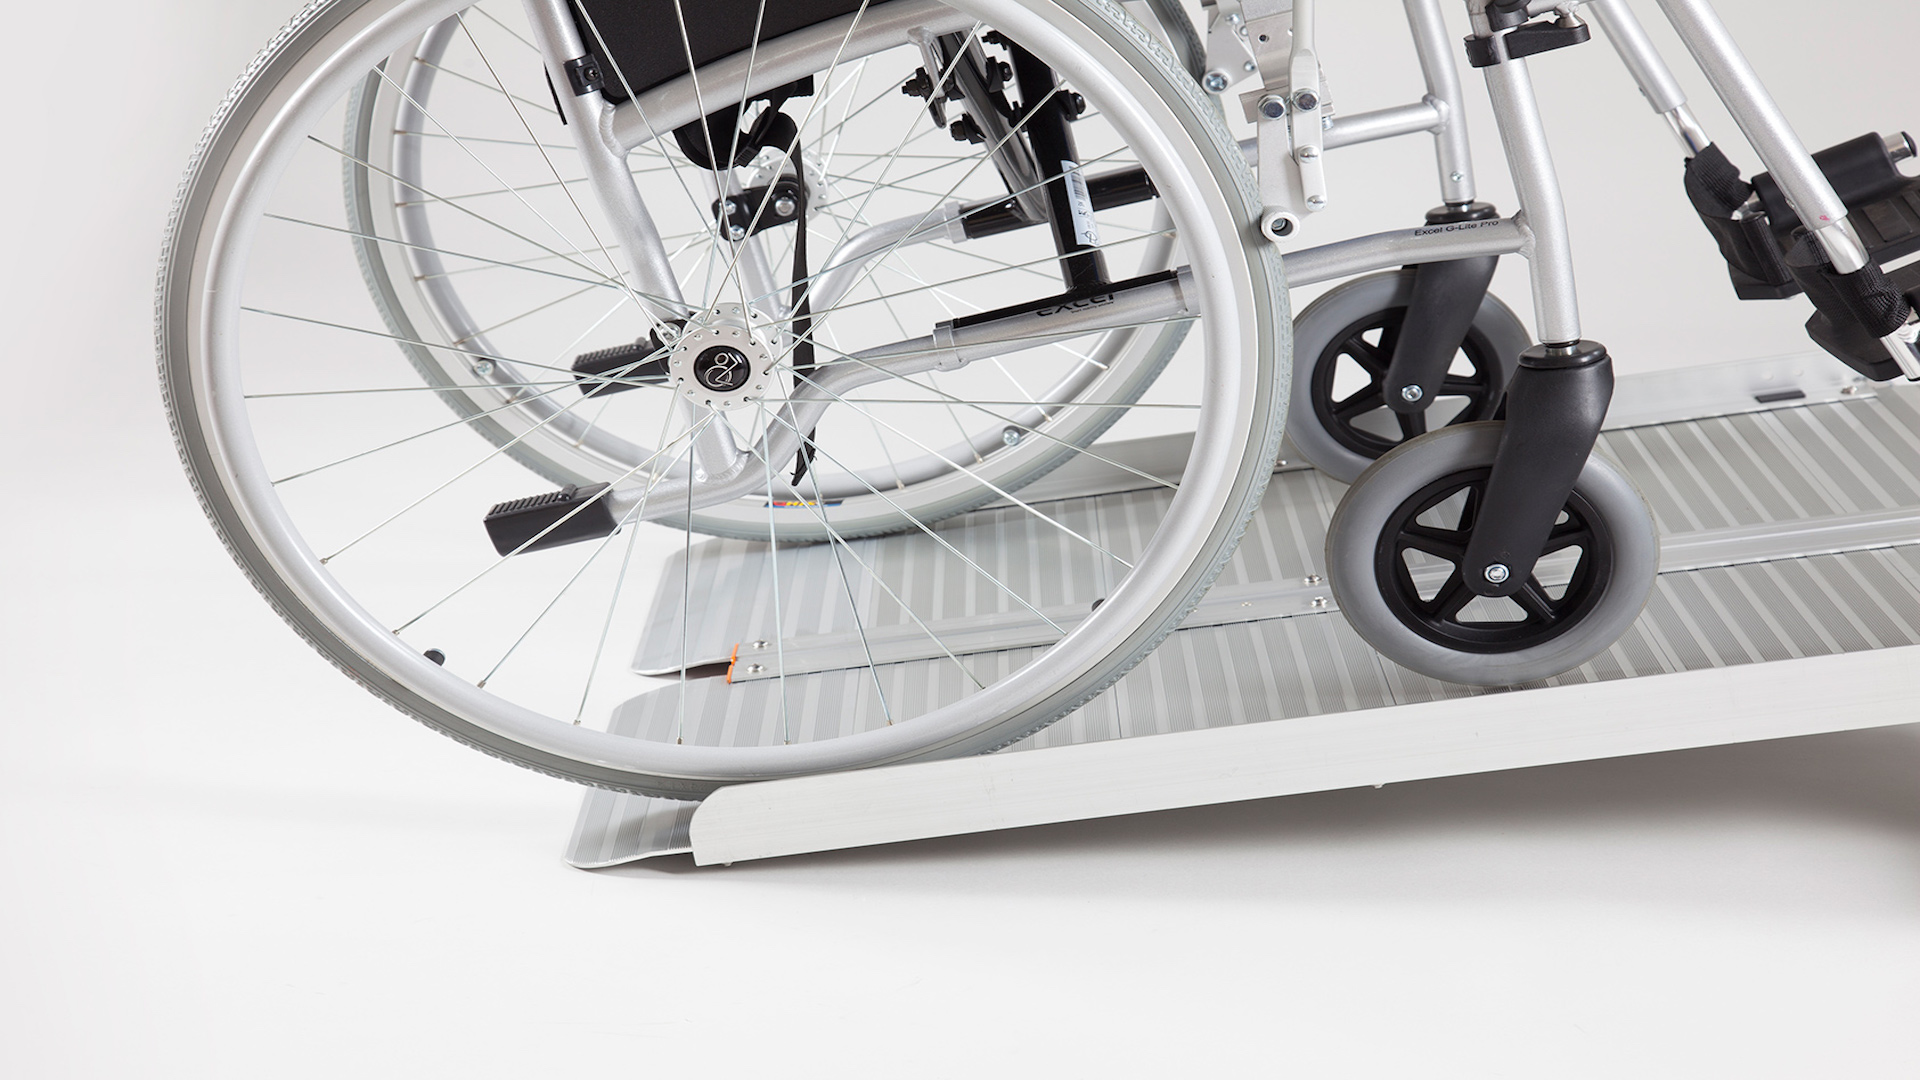 Faltbare Rollstuhlrampe mit Rollstuhl